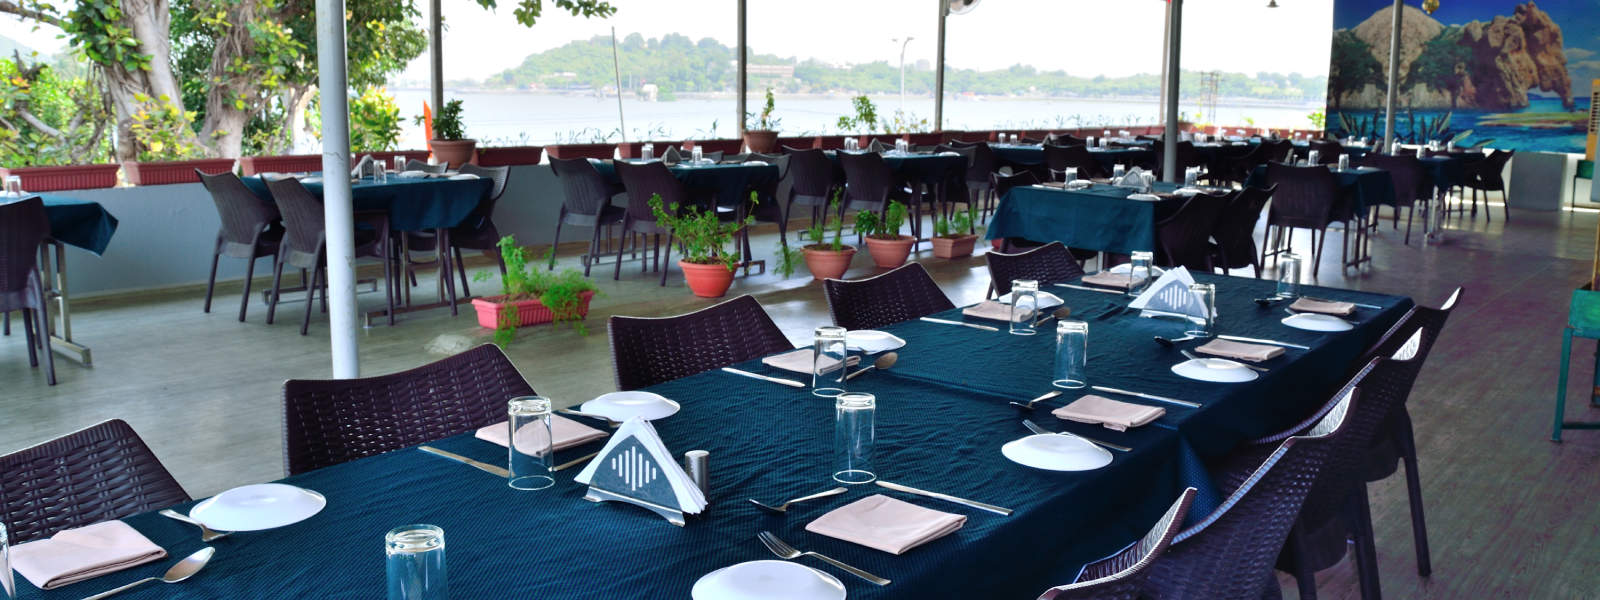 Lake Attached Multi Cuisine Restaurant Udaipur